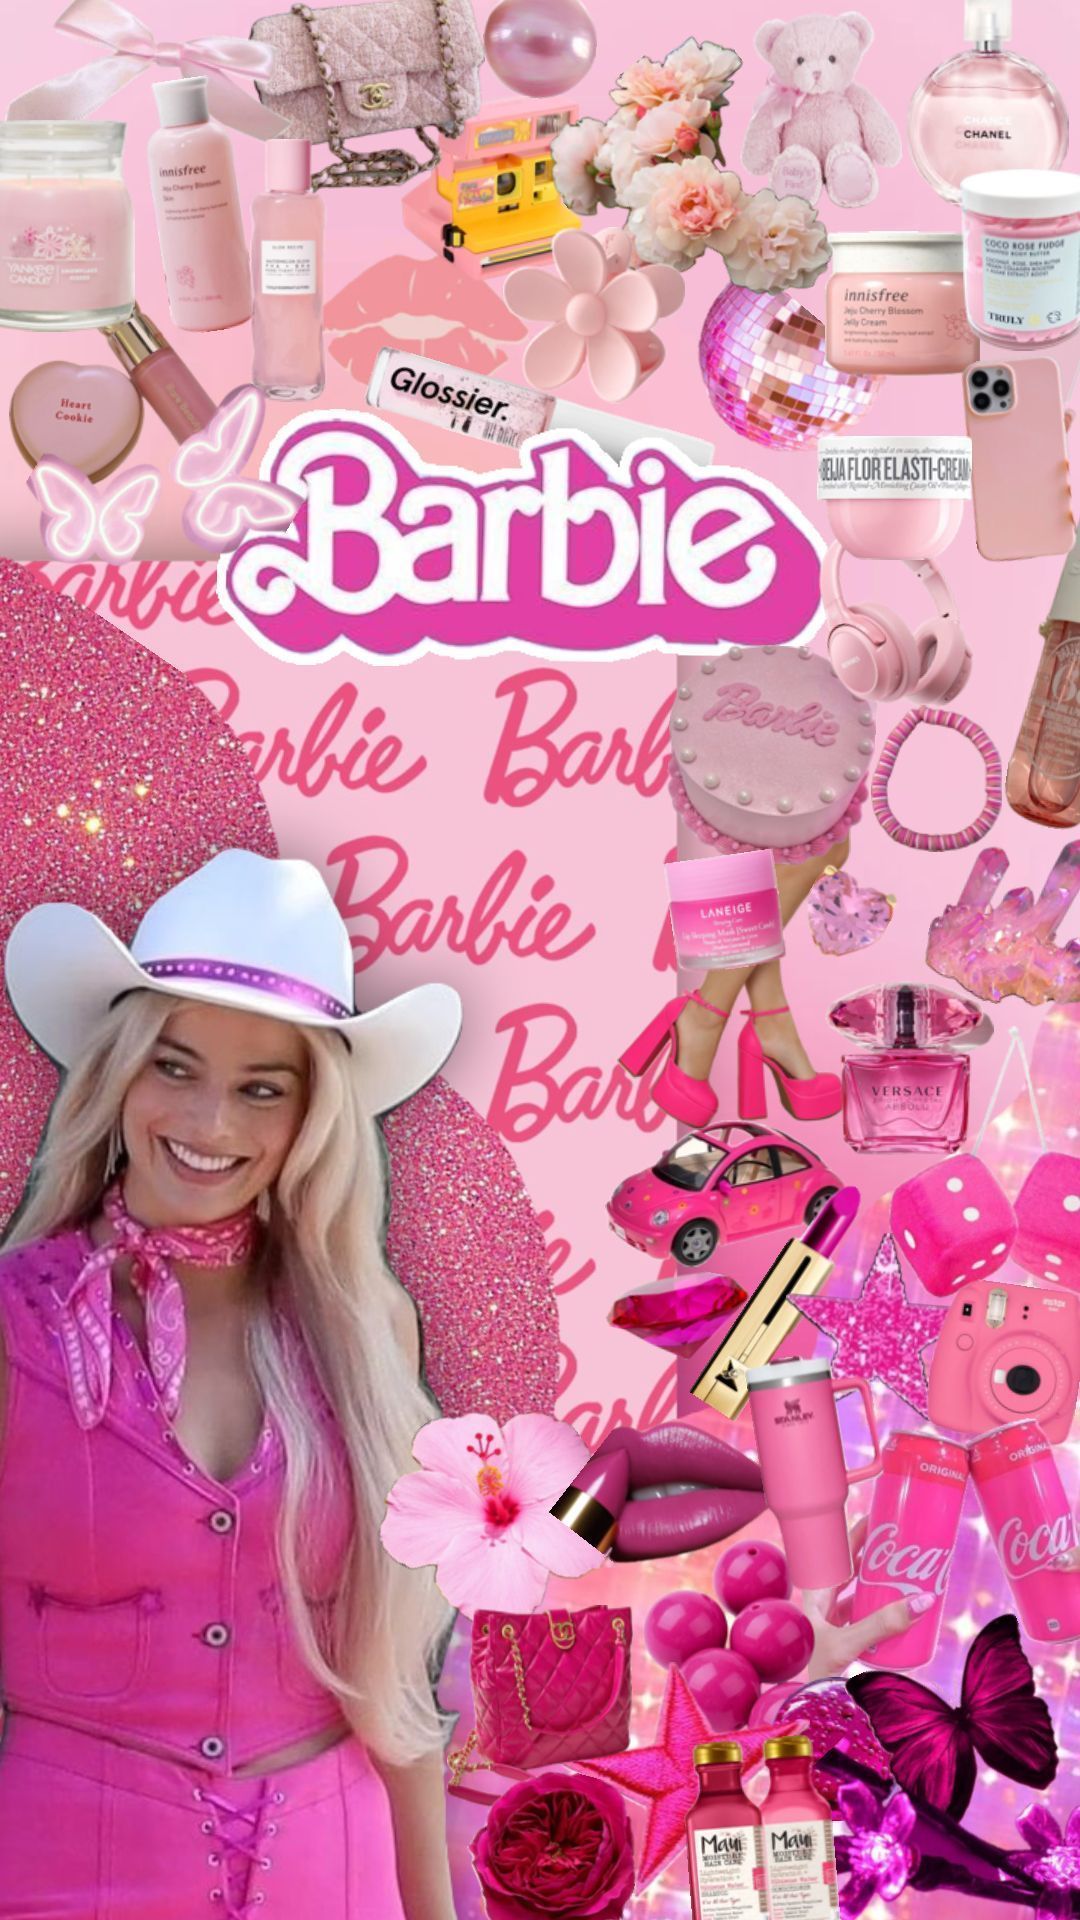 #barbie #barbieaesthetic #beauty # wallpaper #aesthetic #pink